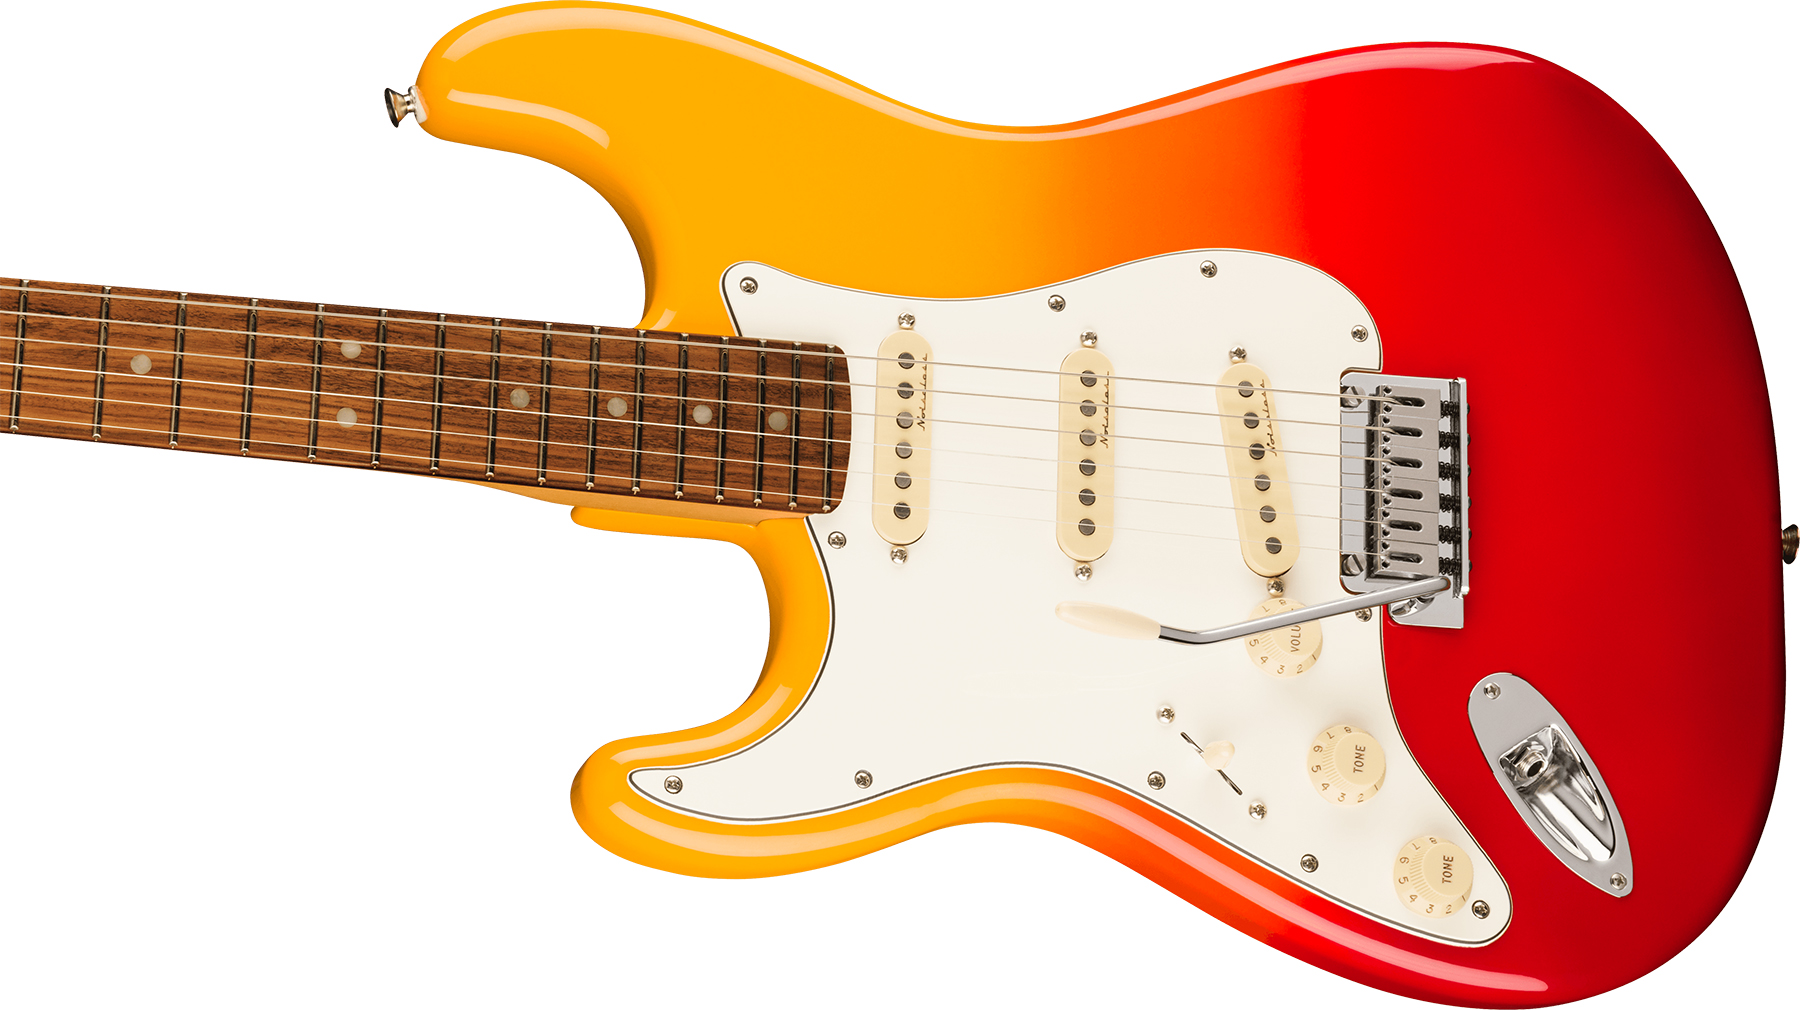 Fender Strat Player Plus Lh Gaucher Mex 3s Trem Pf - Tequila Sunrise - Guitarra electrica para zurdos - Variation 2